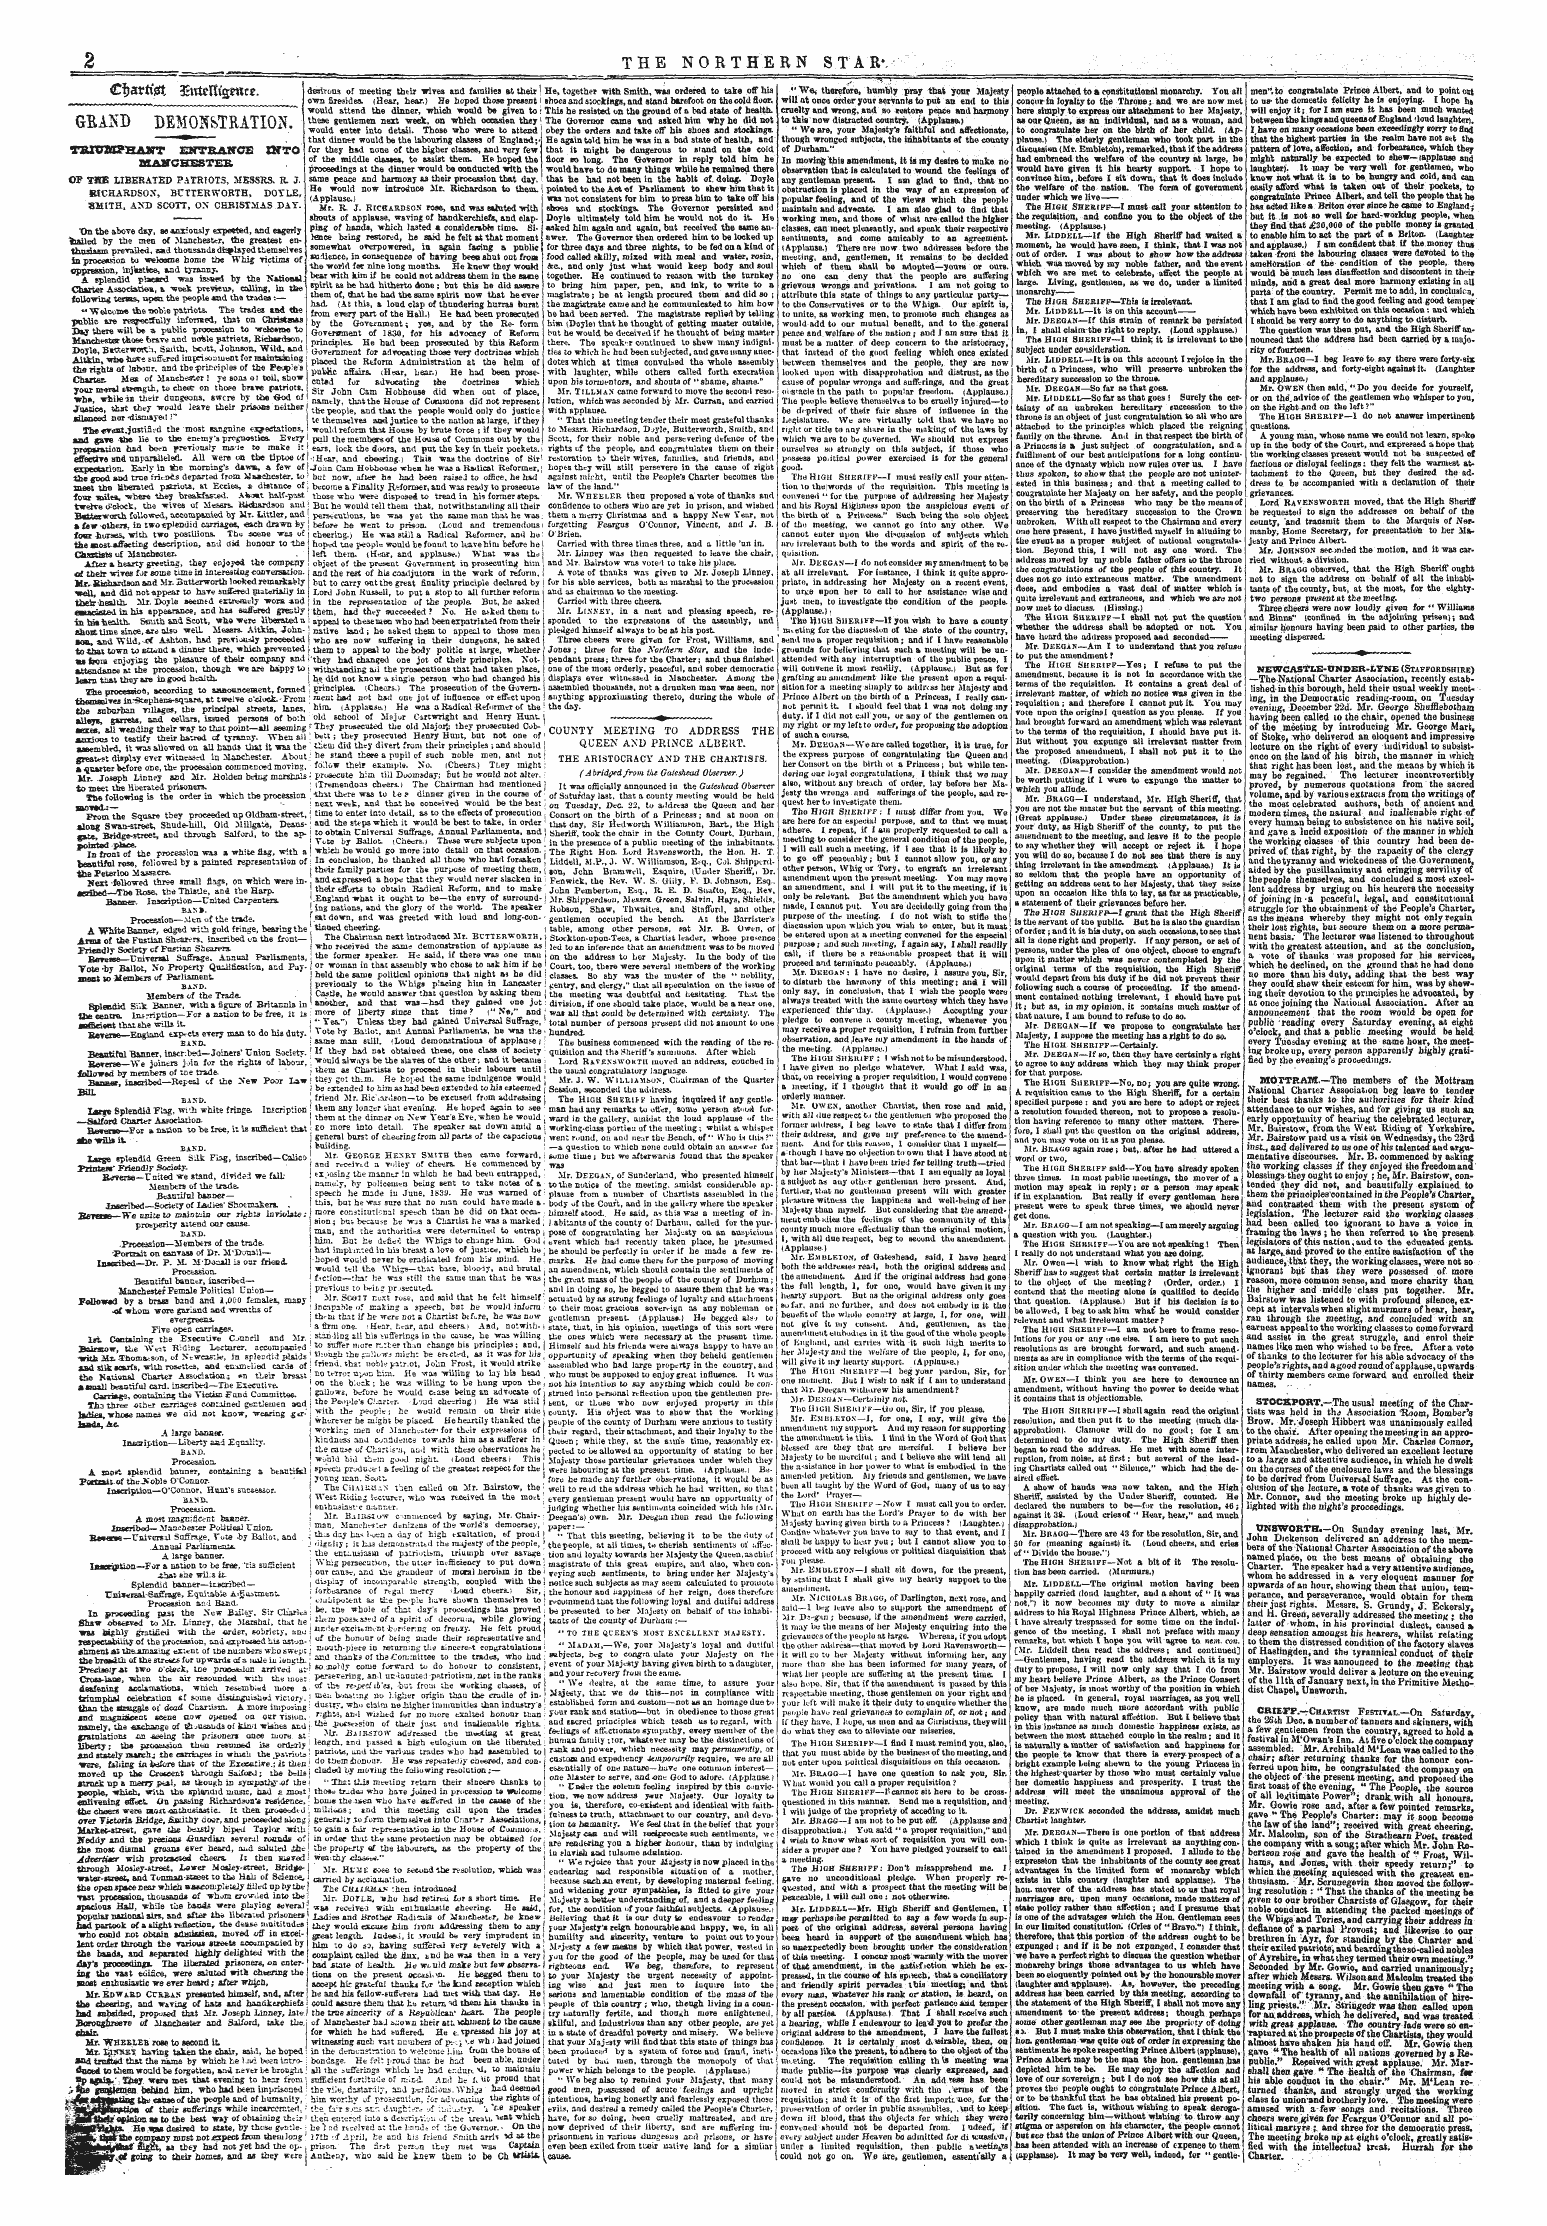 Northern Star (1837-1852): jS F Y, 2nd edition - €I&Gt;Avti$T , £Tttcl%*«Cs.